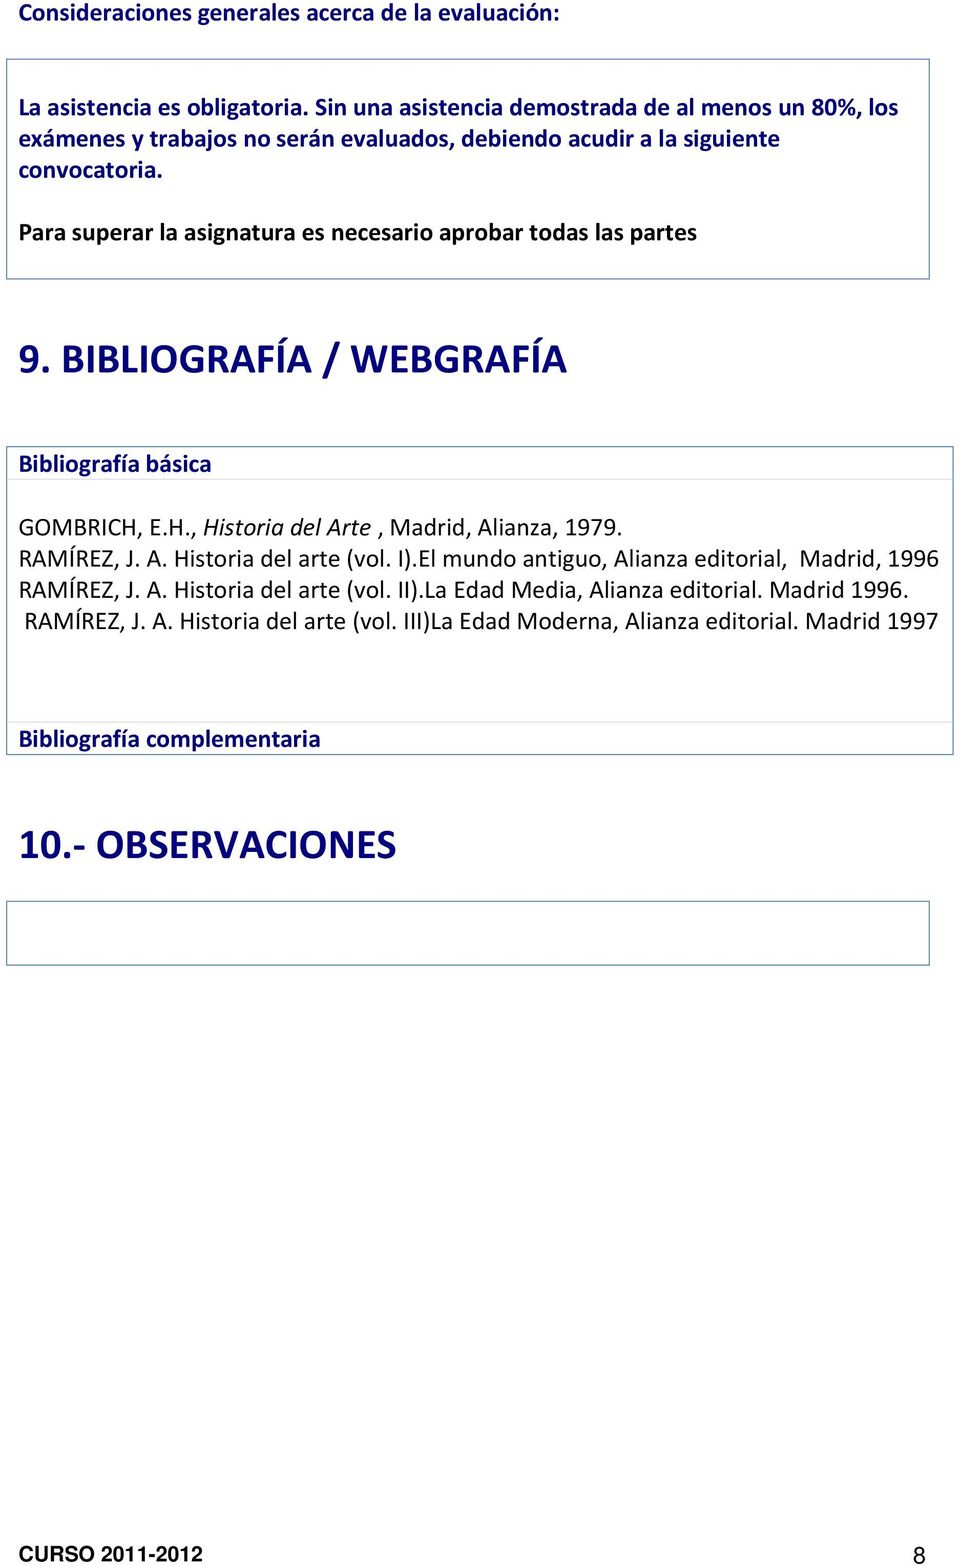 Para superar la asignatura es necesario aprobar todas las partes 9. BIBLIOGRAFÍA / WEBGRAFÍA Bibliografía básica GOMBRICH, E.H., Historia del Arte, Madrid, Alianza, 1979. RAMÍREZ, J.